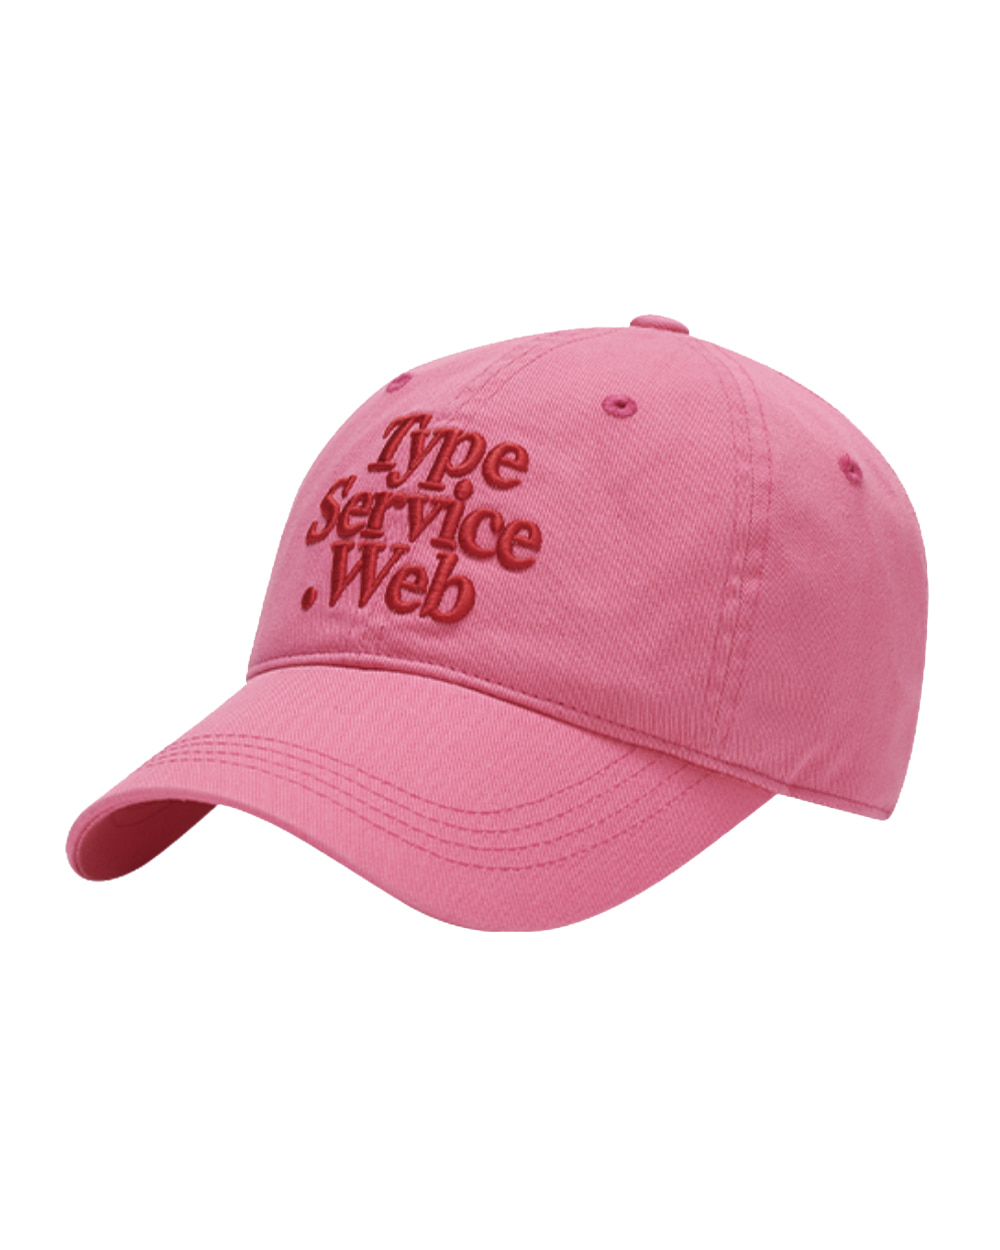 타입서비스 Typeservice Web Cap (Pink)